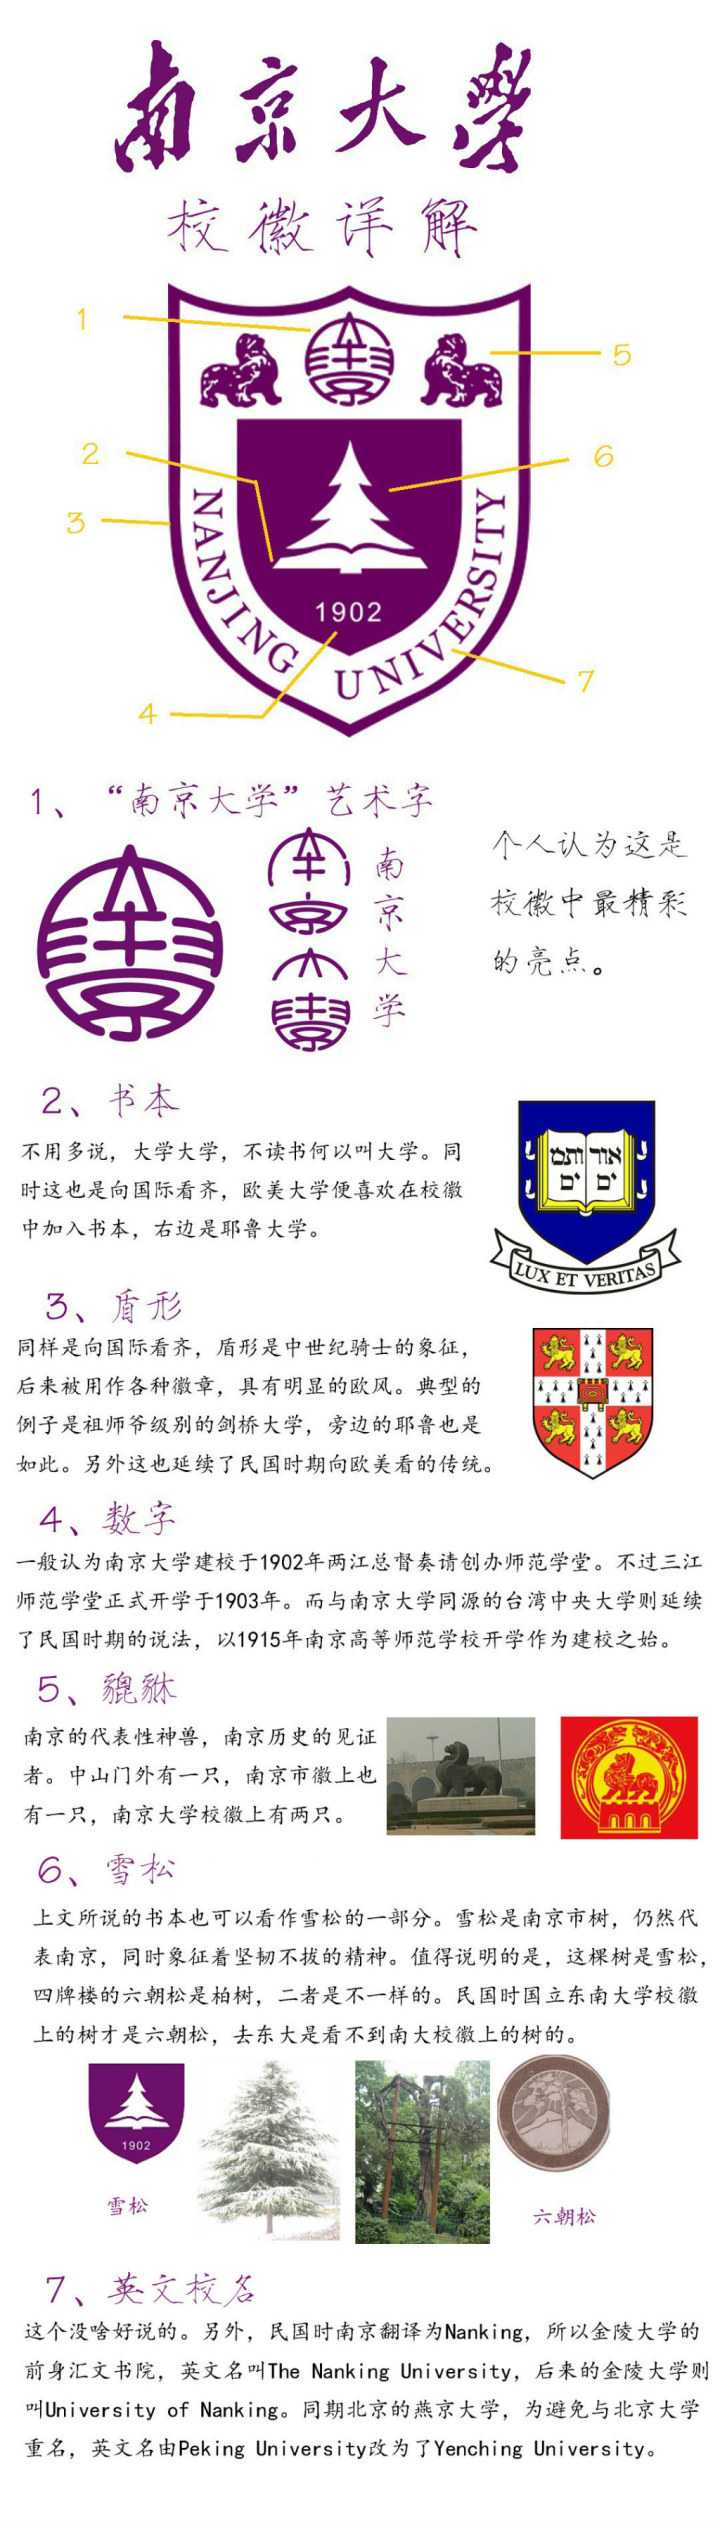 讲一点南京大学校徽的故事,校徽上那个是雪松,不是六朝松(其实六朝松